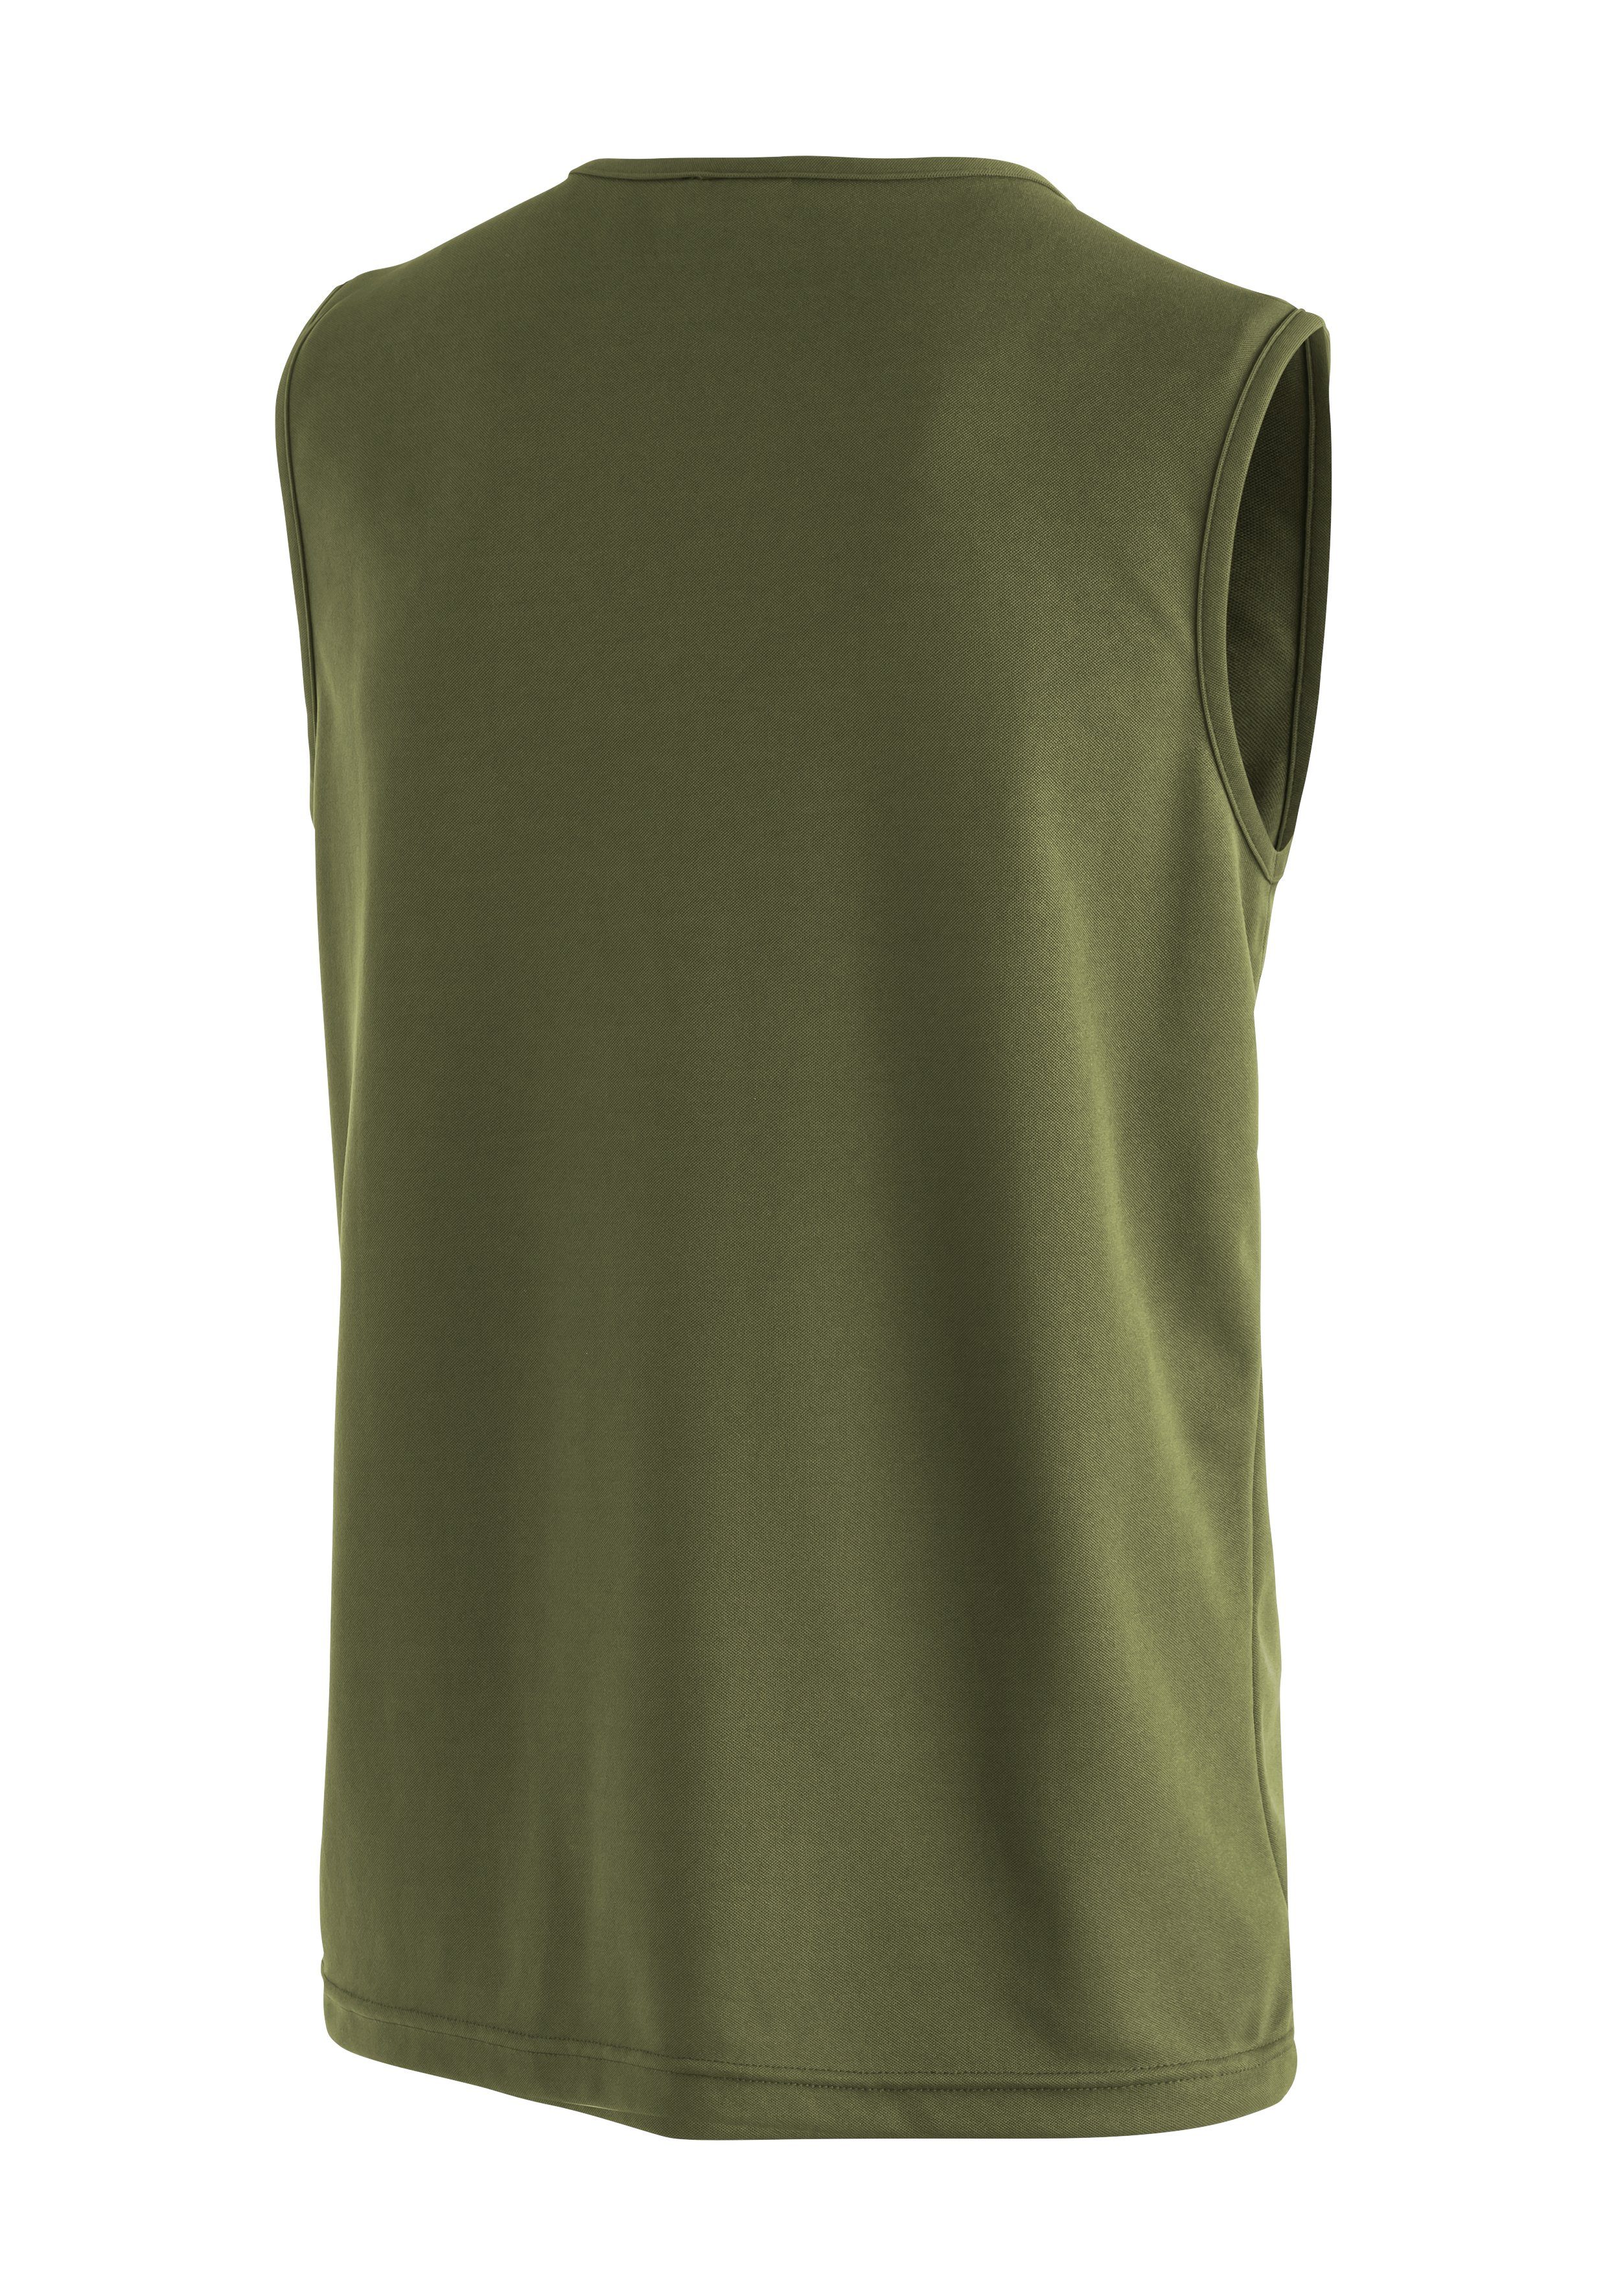 Maier Sports Peter Shirt Tank-Top, Herren ärmelloses Funktionsshirt Piqué moosgrün